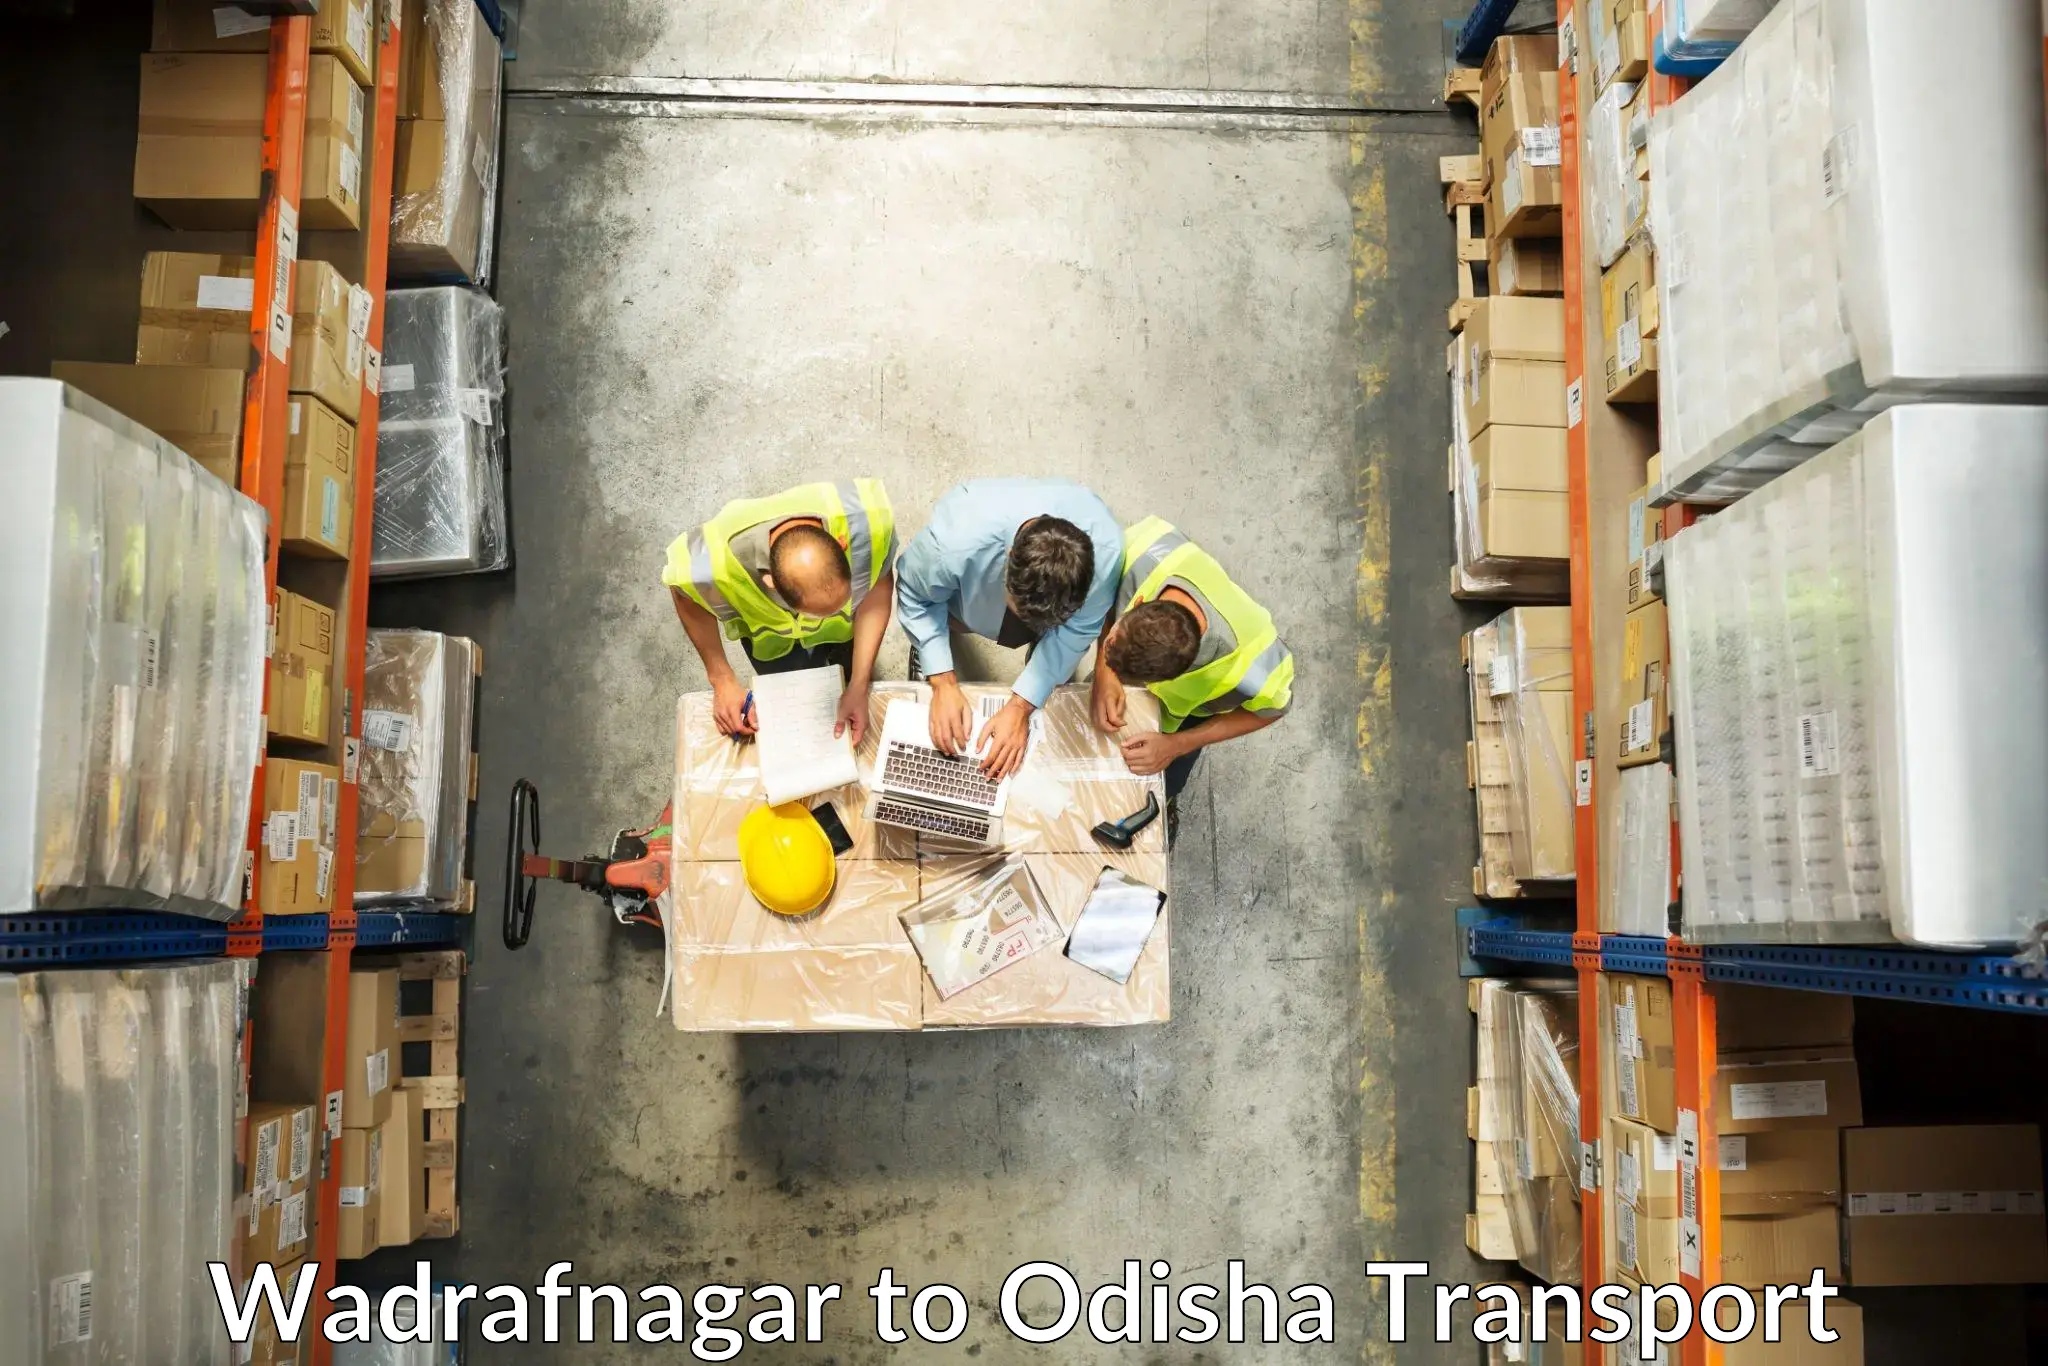 Transport shared services Wadrafnagar to Jagannathprasad